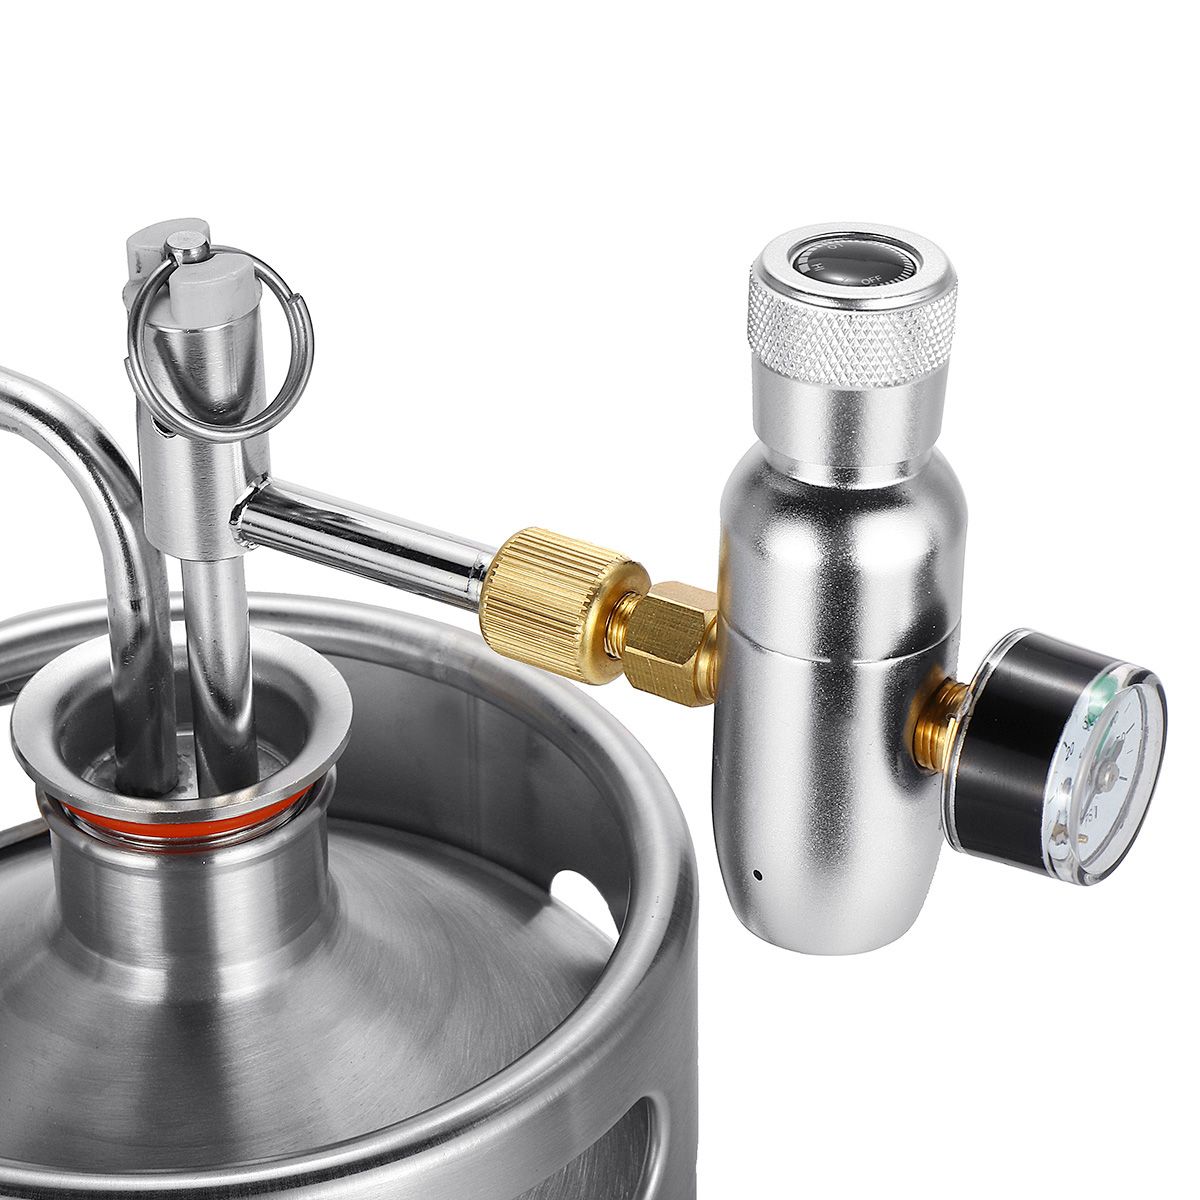 2L-Stainless-Steel-Wine-Bucket-Beer-Keg-Bottles-Growler-Homemade-Beer-Barrel-Silver-1332881